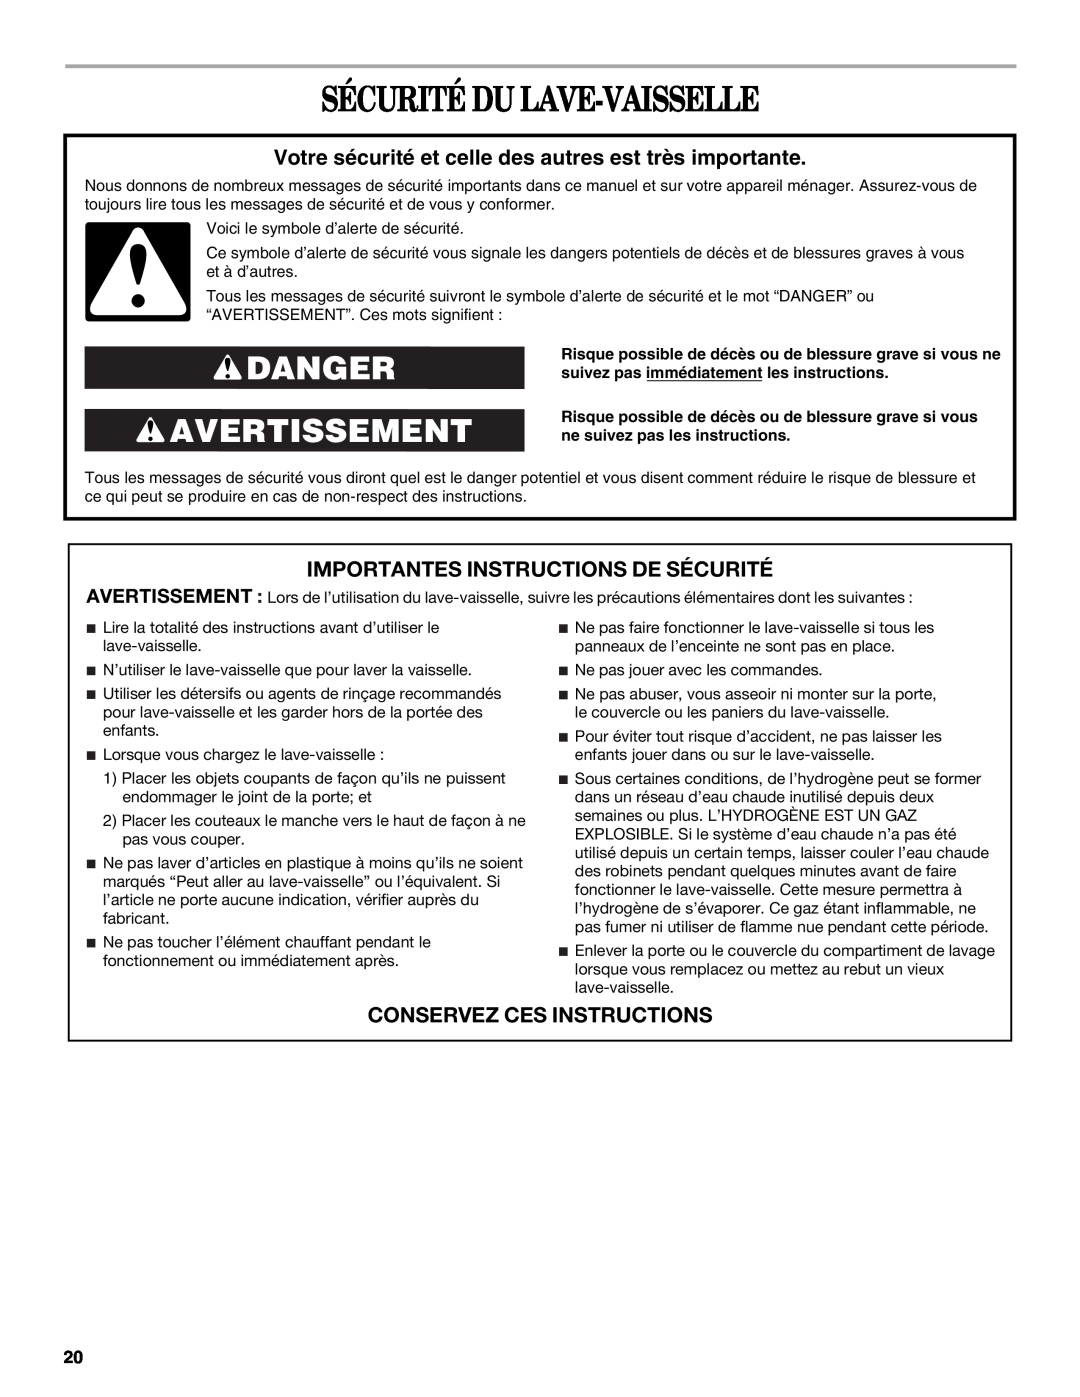 Whirlpool DU810, DU850, DU811 manual Sécurité Du Lave-Vaisselle, Danger Avertissement, Importantes Instructions De Sécurité 